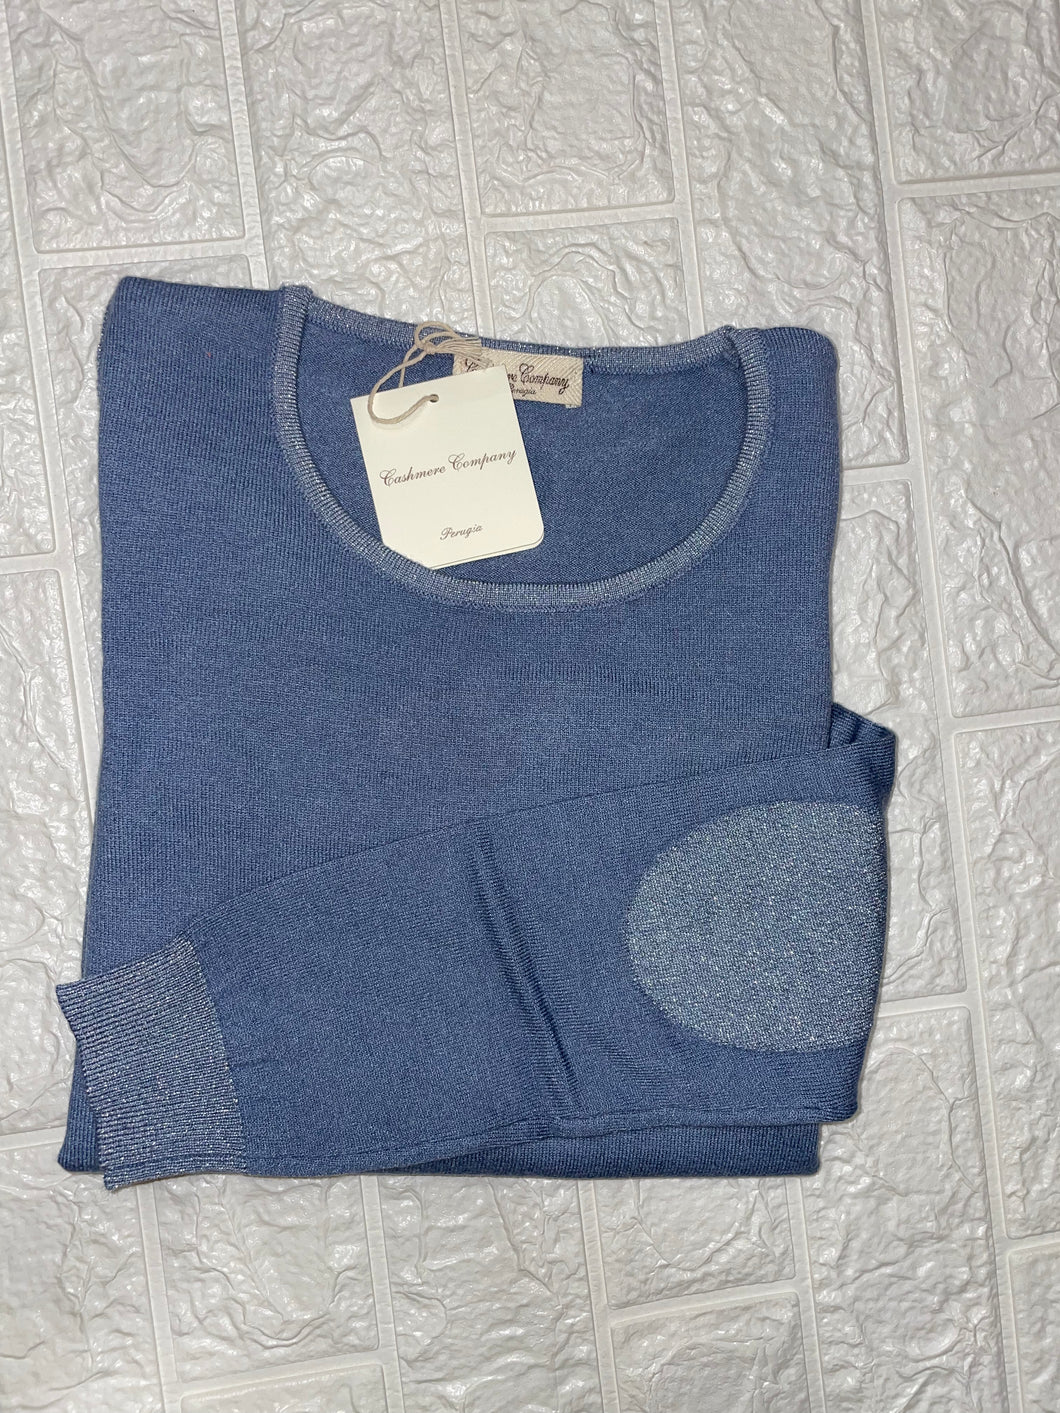 Cashmere Company maglia donna girocollo SC-50%  azzurro lurex